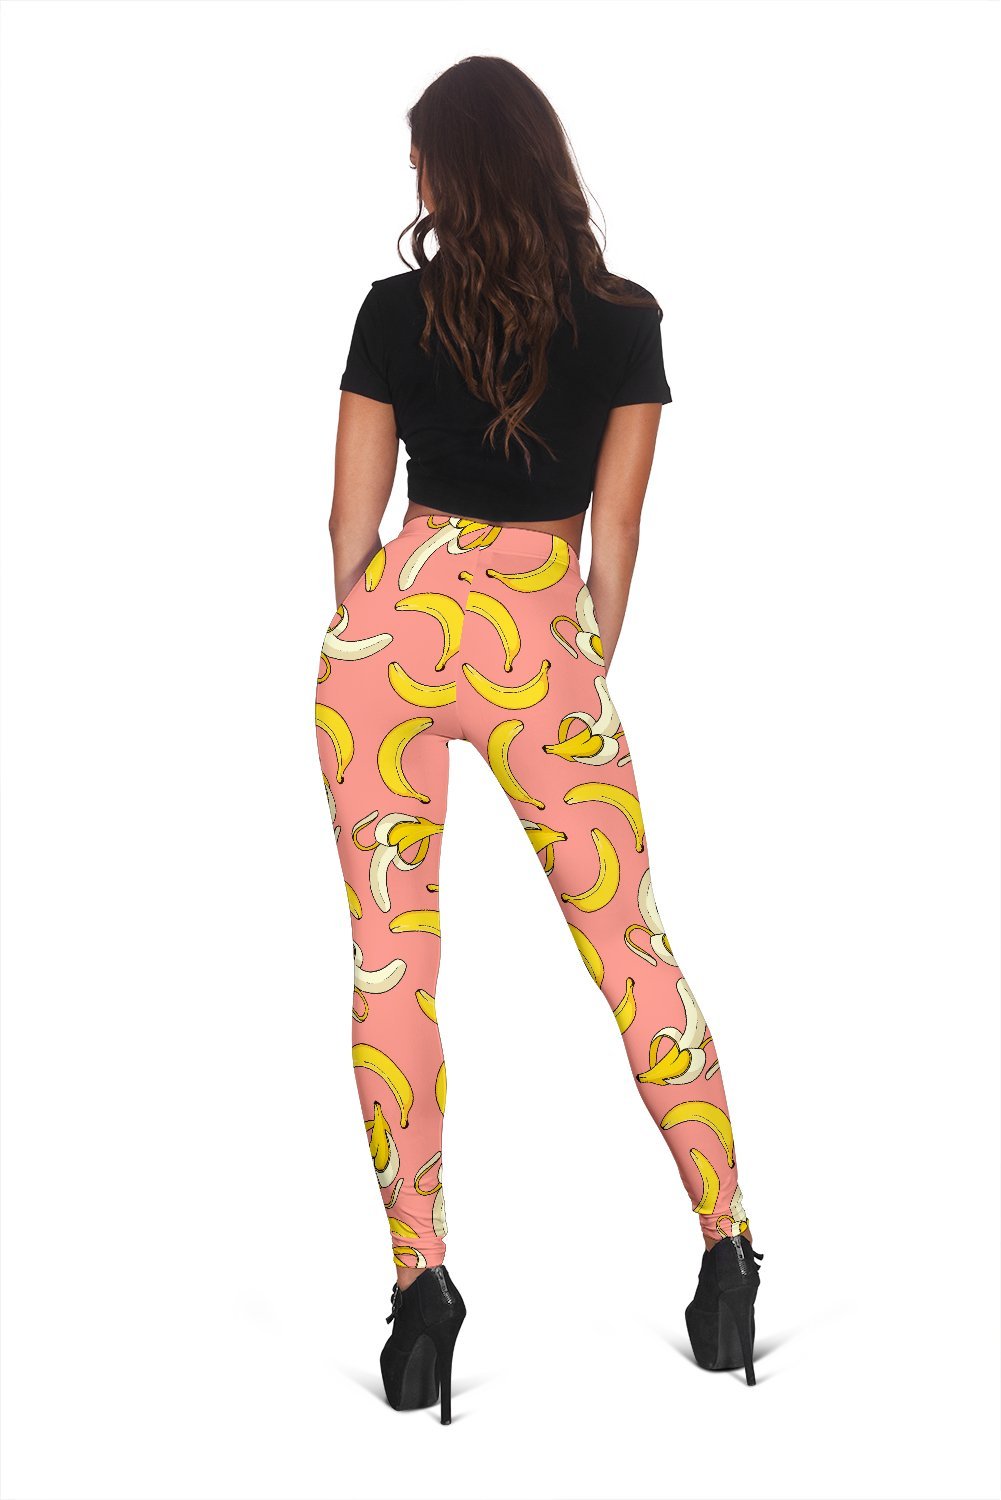 Pink Banana Pattern Print Women Leggings-grizzshop